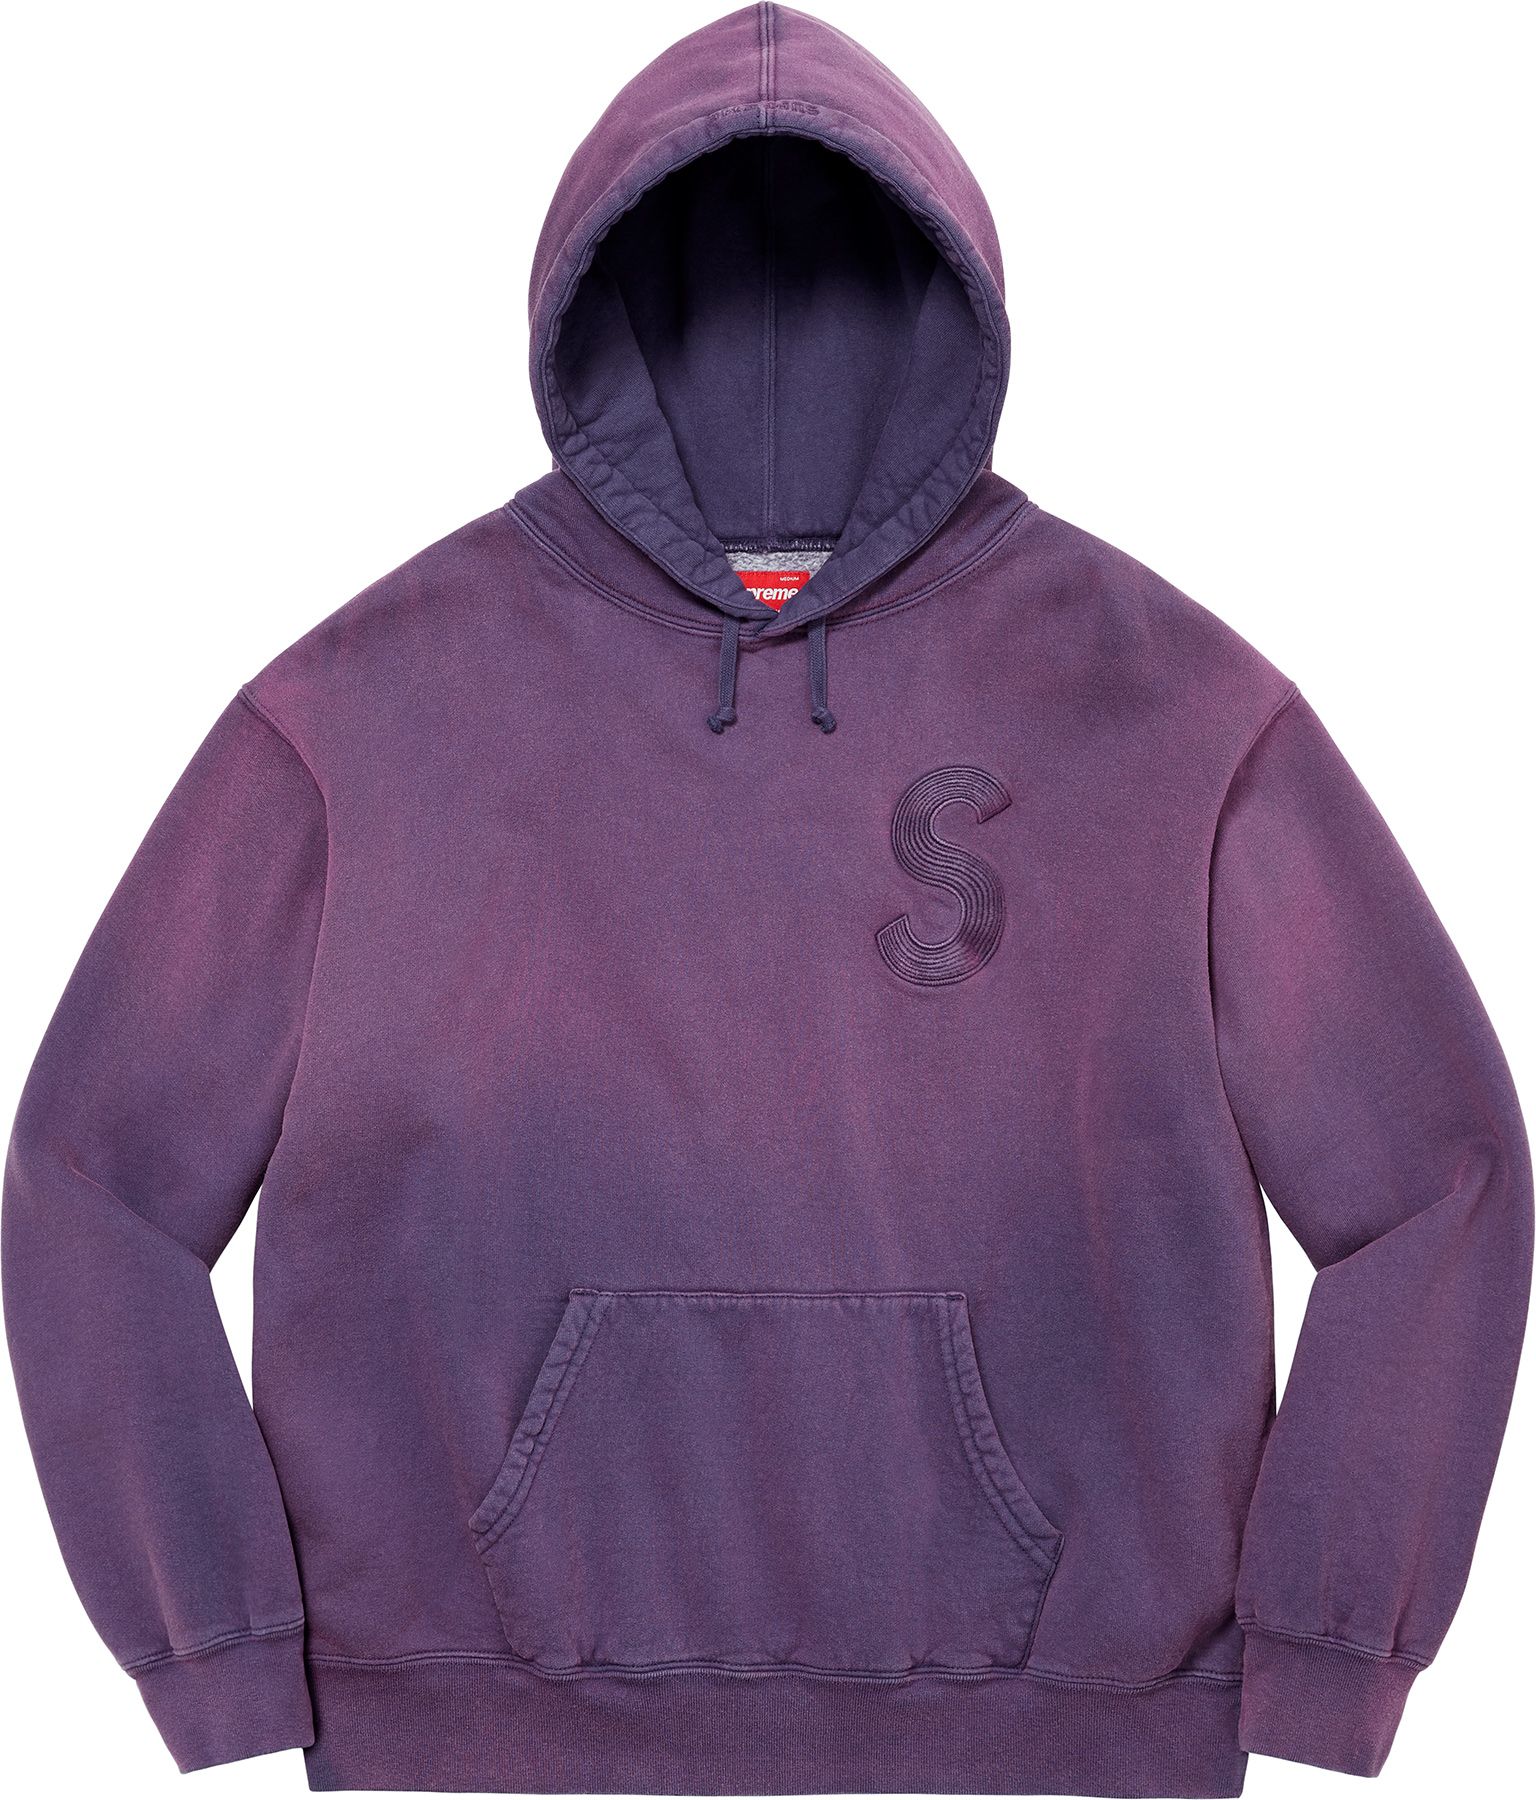 Overdyed S Logo Hooded Sweatshirt - Supreme